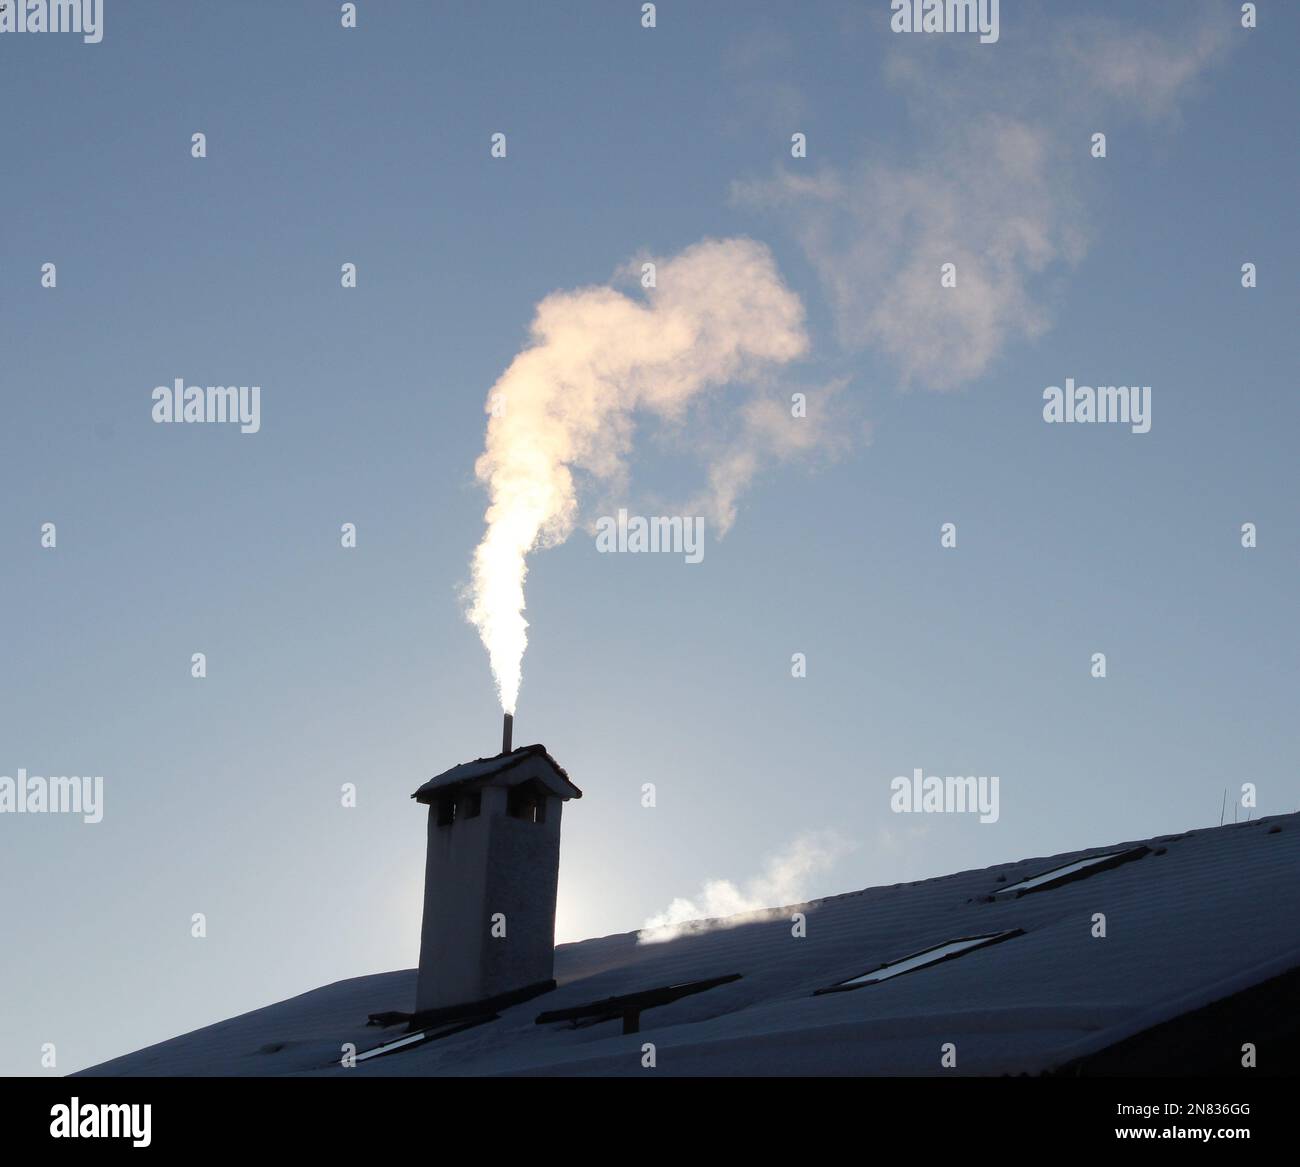 rauchender Kamin im Gegenlicht auf einem verschneiten Hausdach, blauer Himmel * smoking chimney on snowy roof Stock Photo